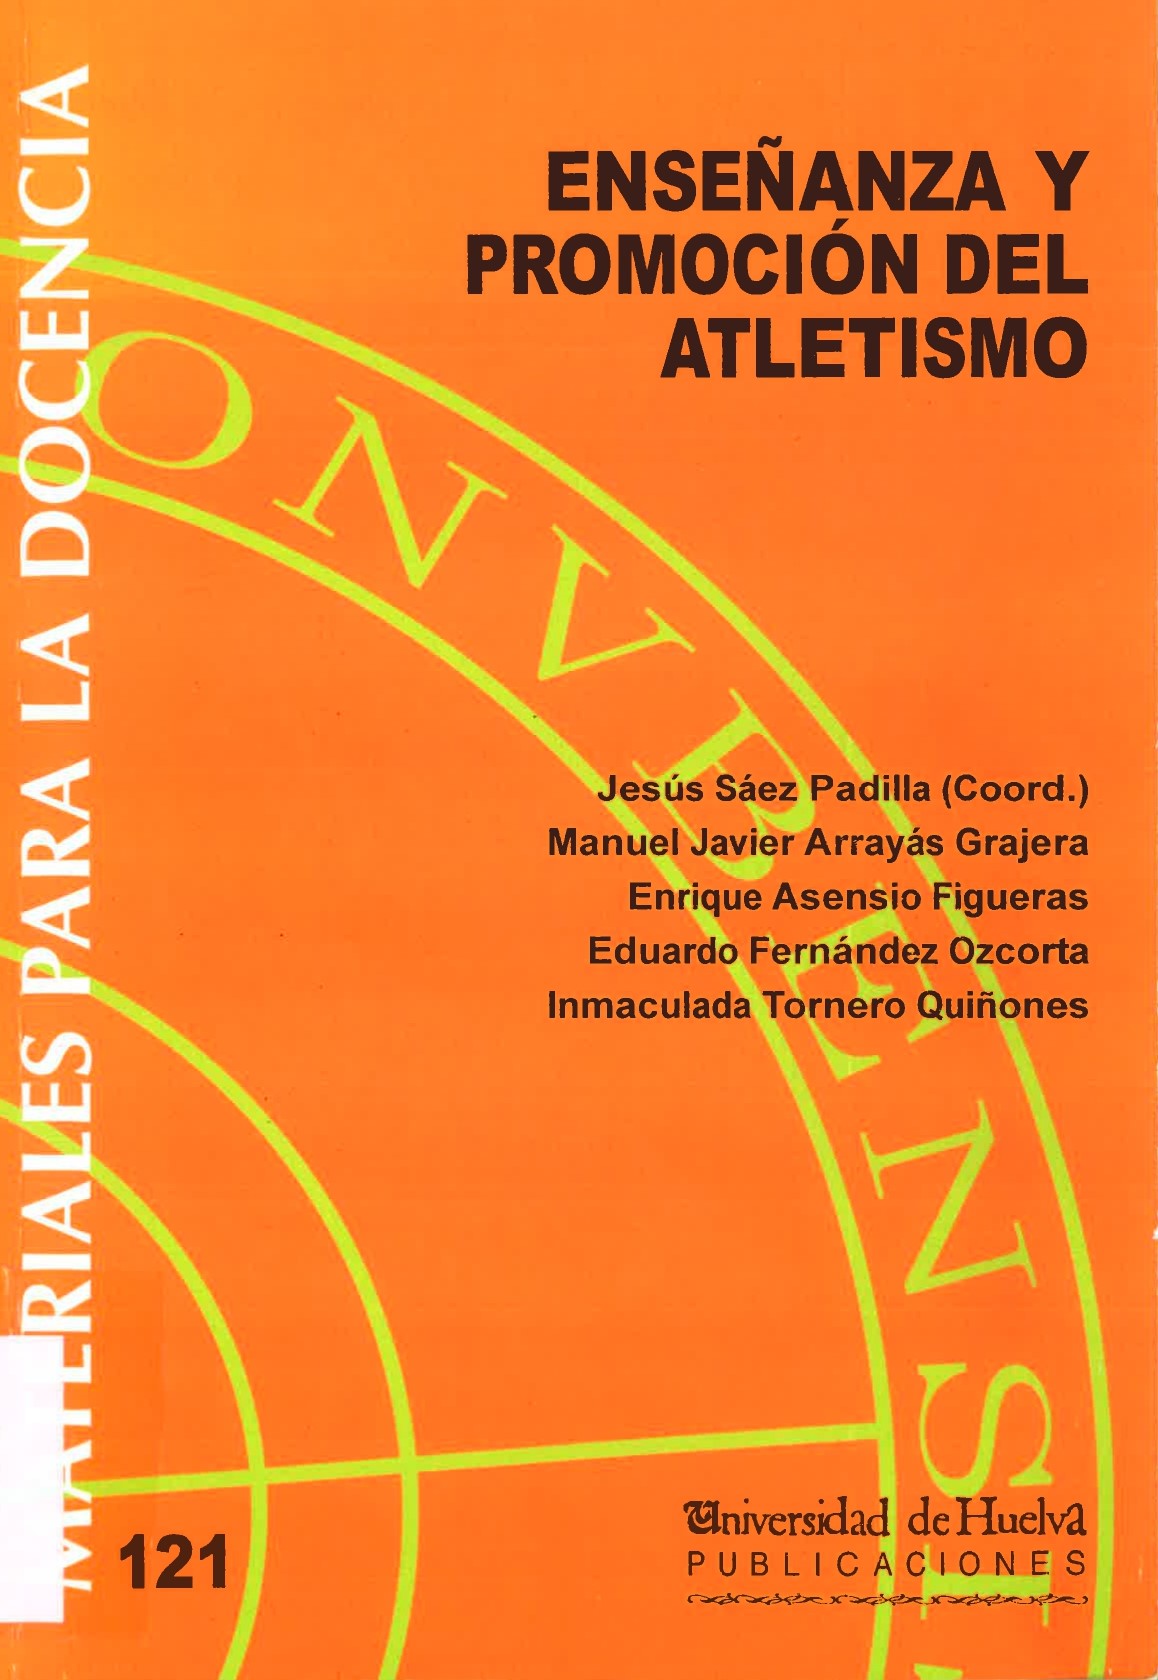 Imagen de portada del libro Enseñanza y promoción del atletismo